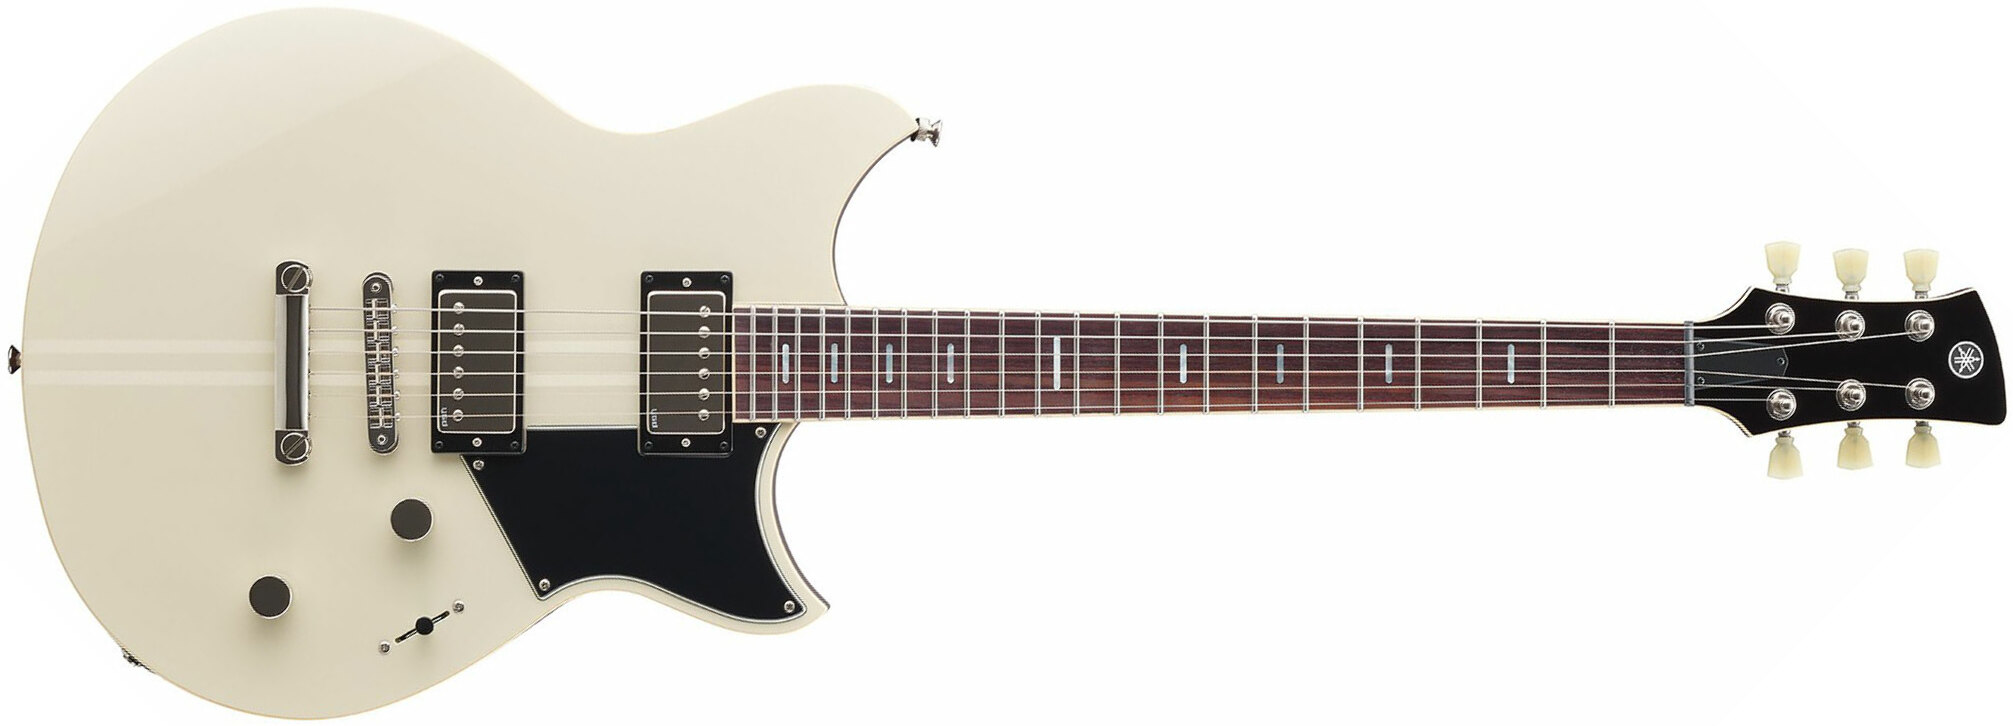 Yamaha Rss20 Revstar Standard Hh Ht Rw - Vintage White - Guitarra eléctrica de doble corte - Main picture